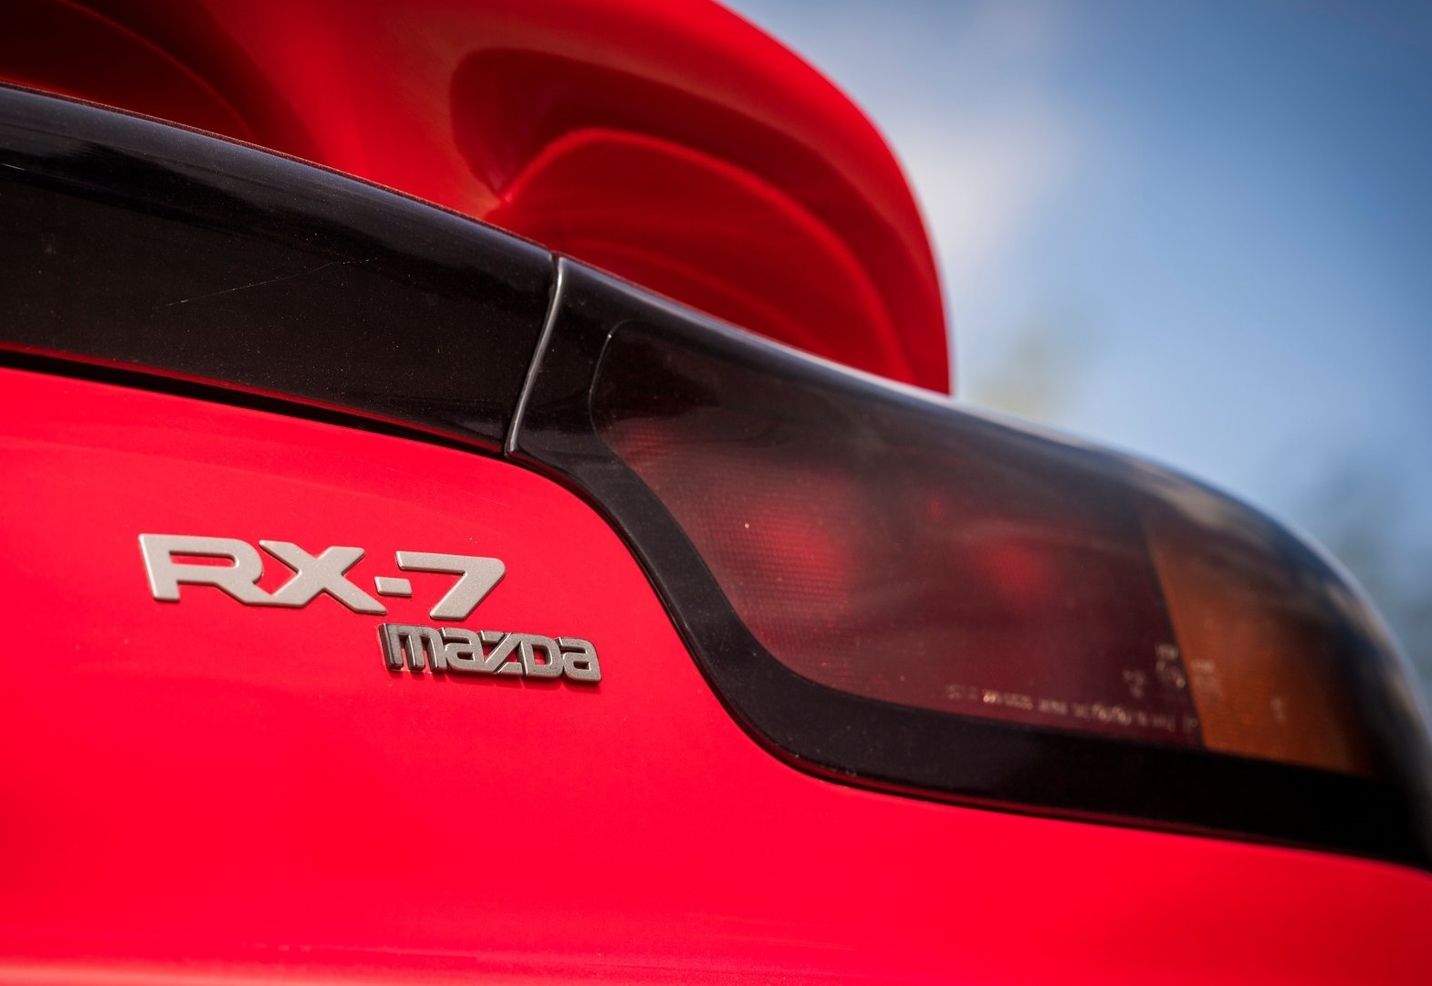 1992 Mazda RX-7 badge